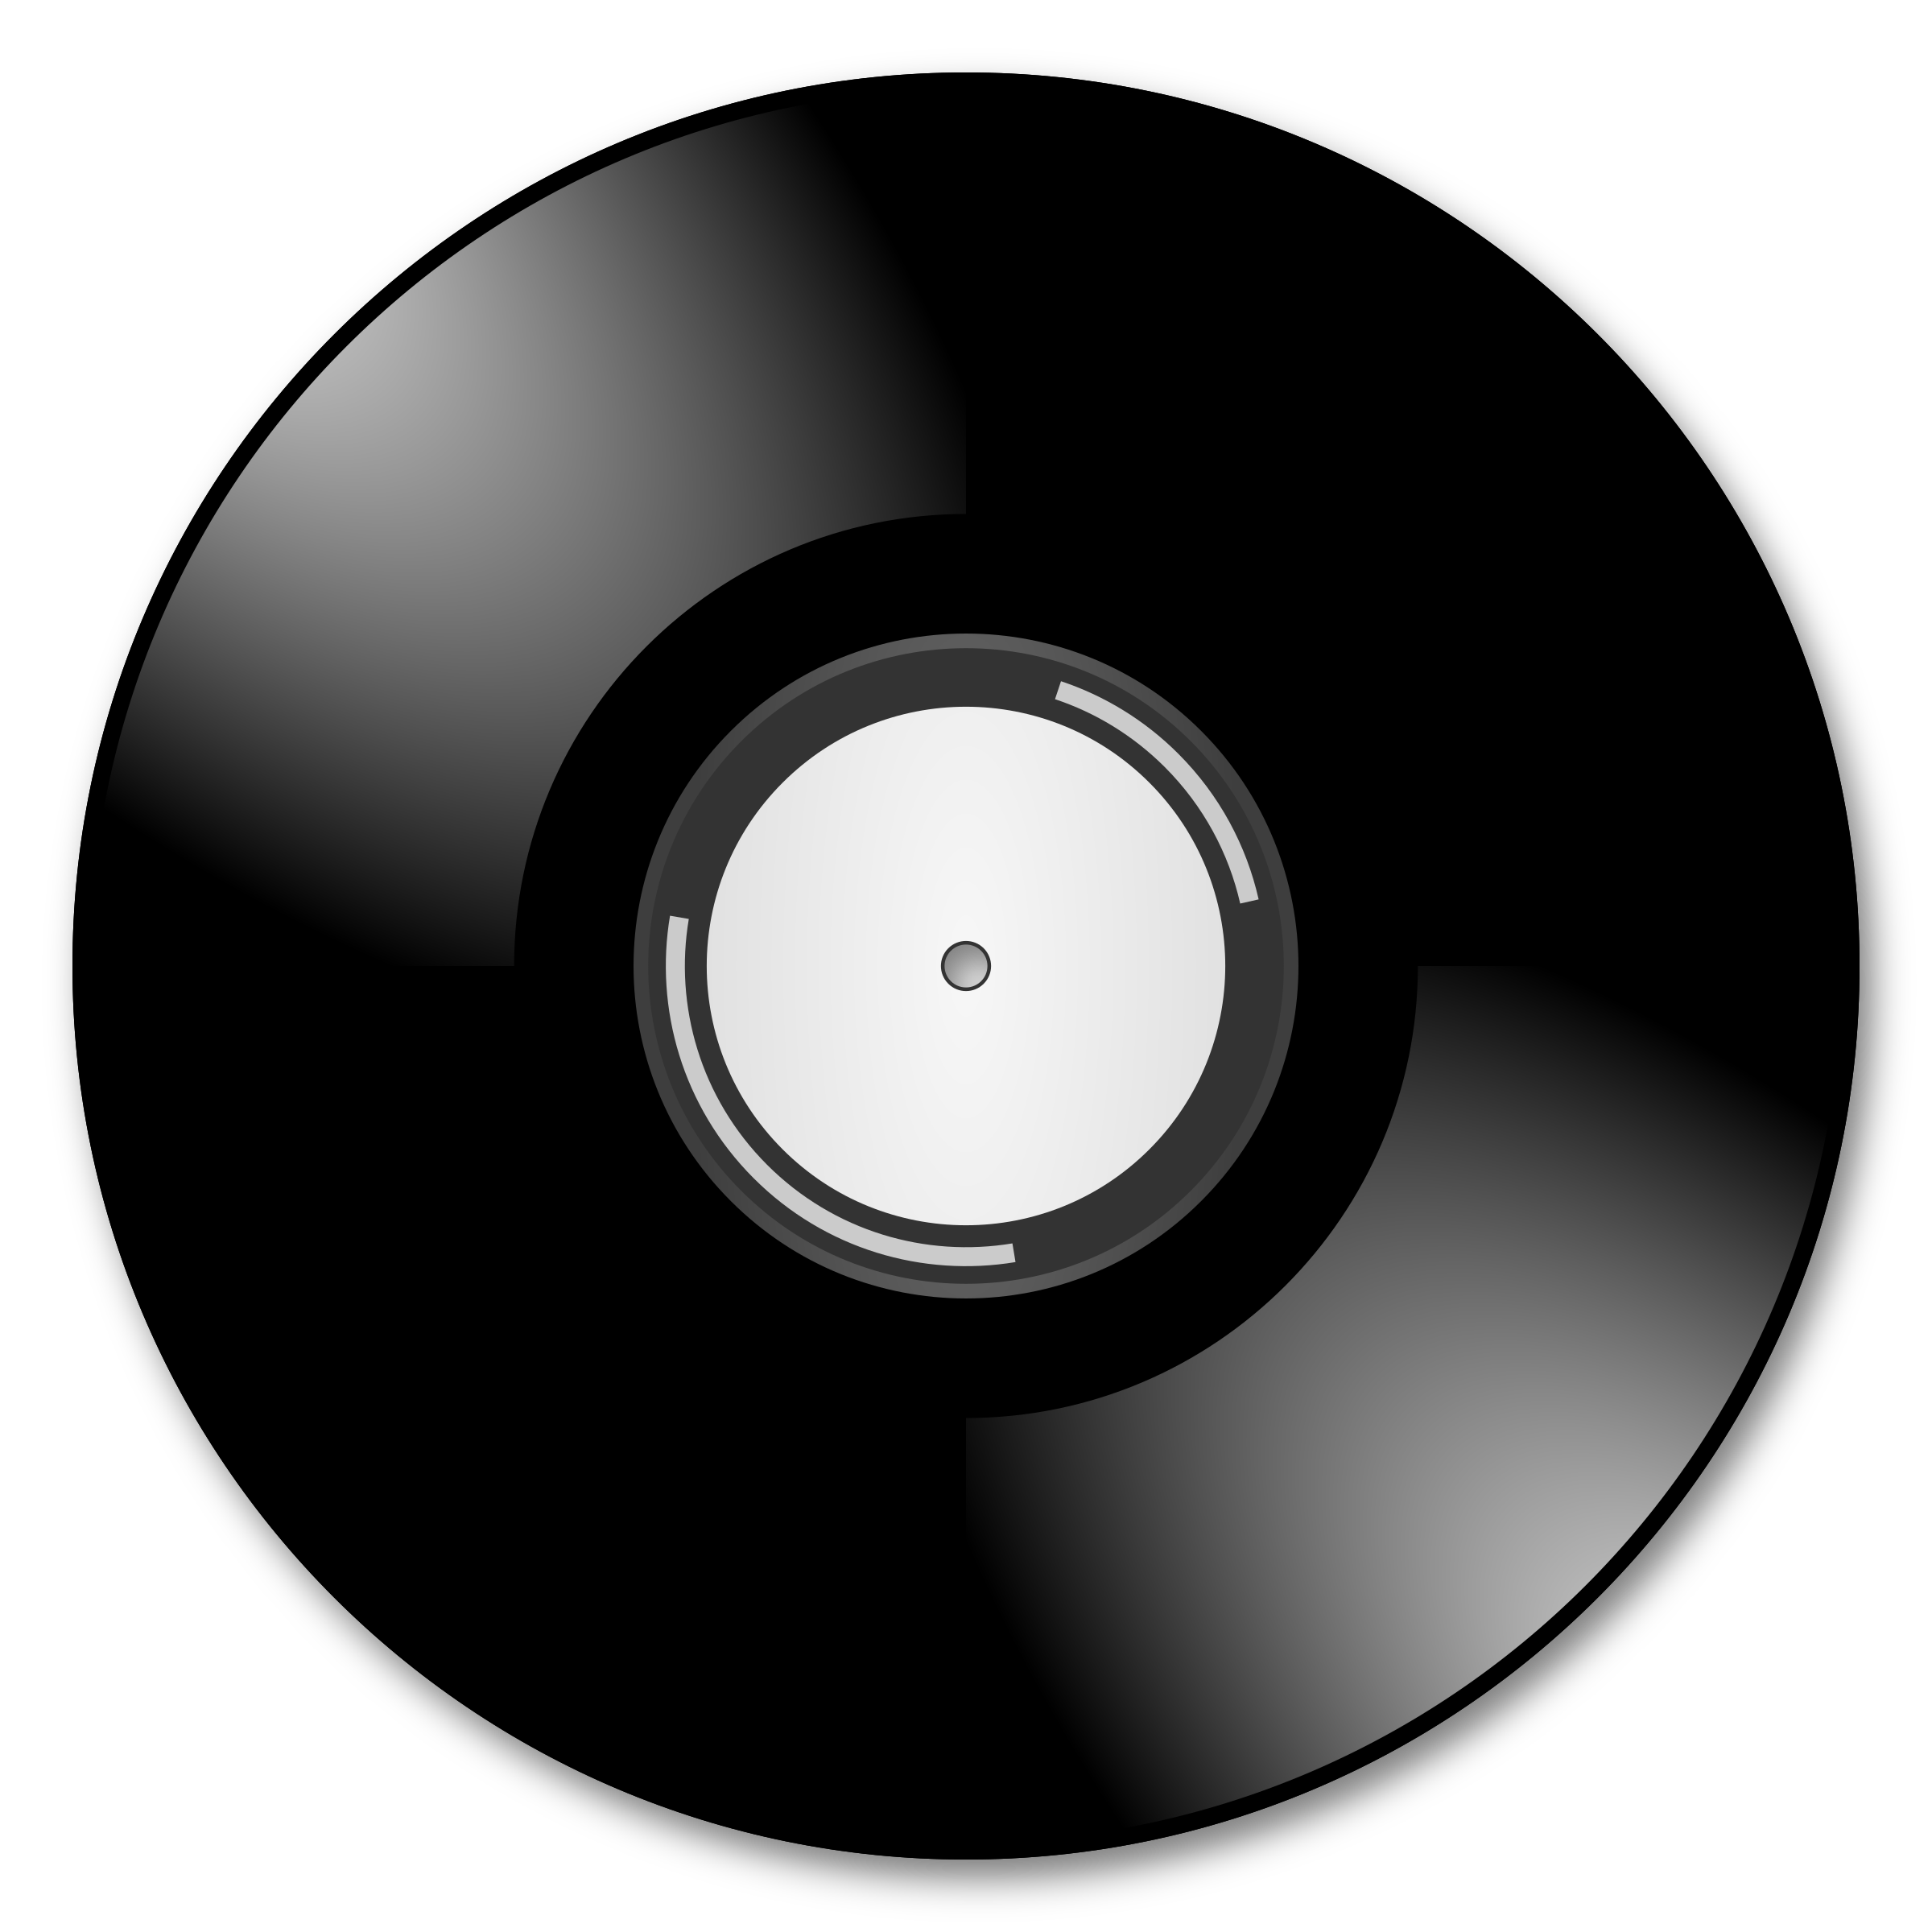 Buy Vinyl Records Online Coupon Code